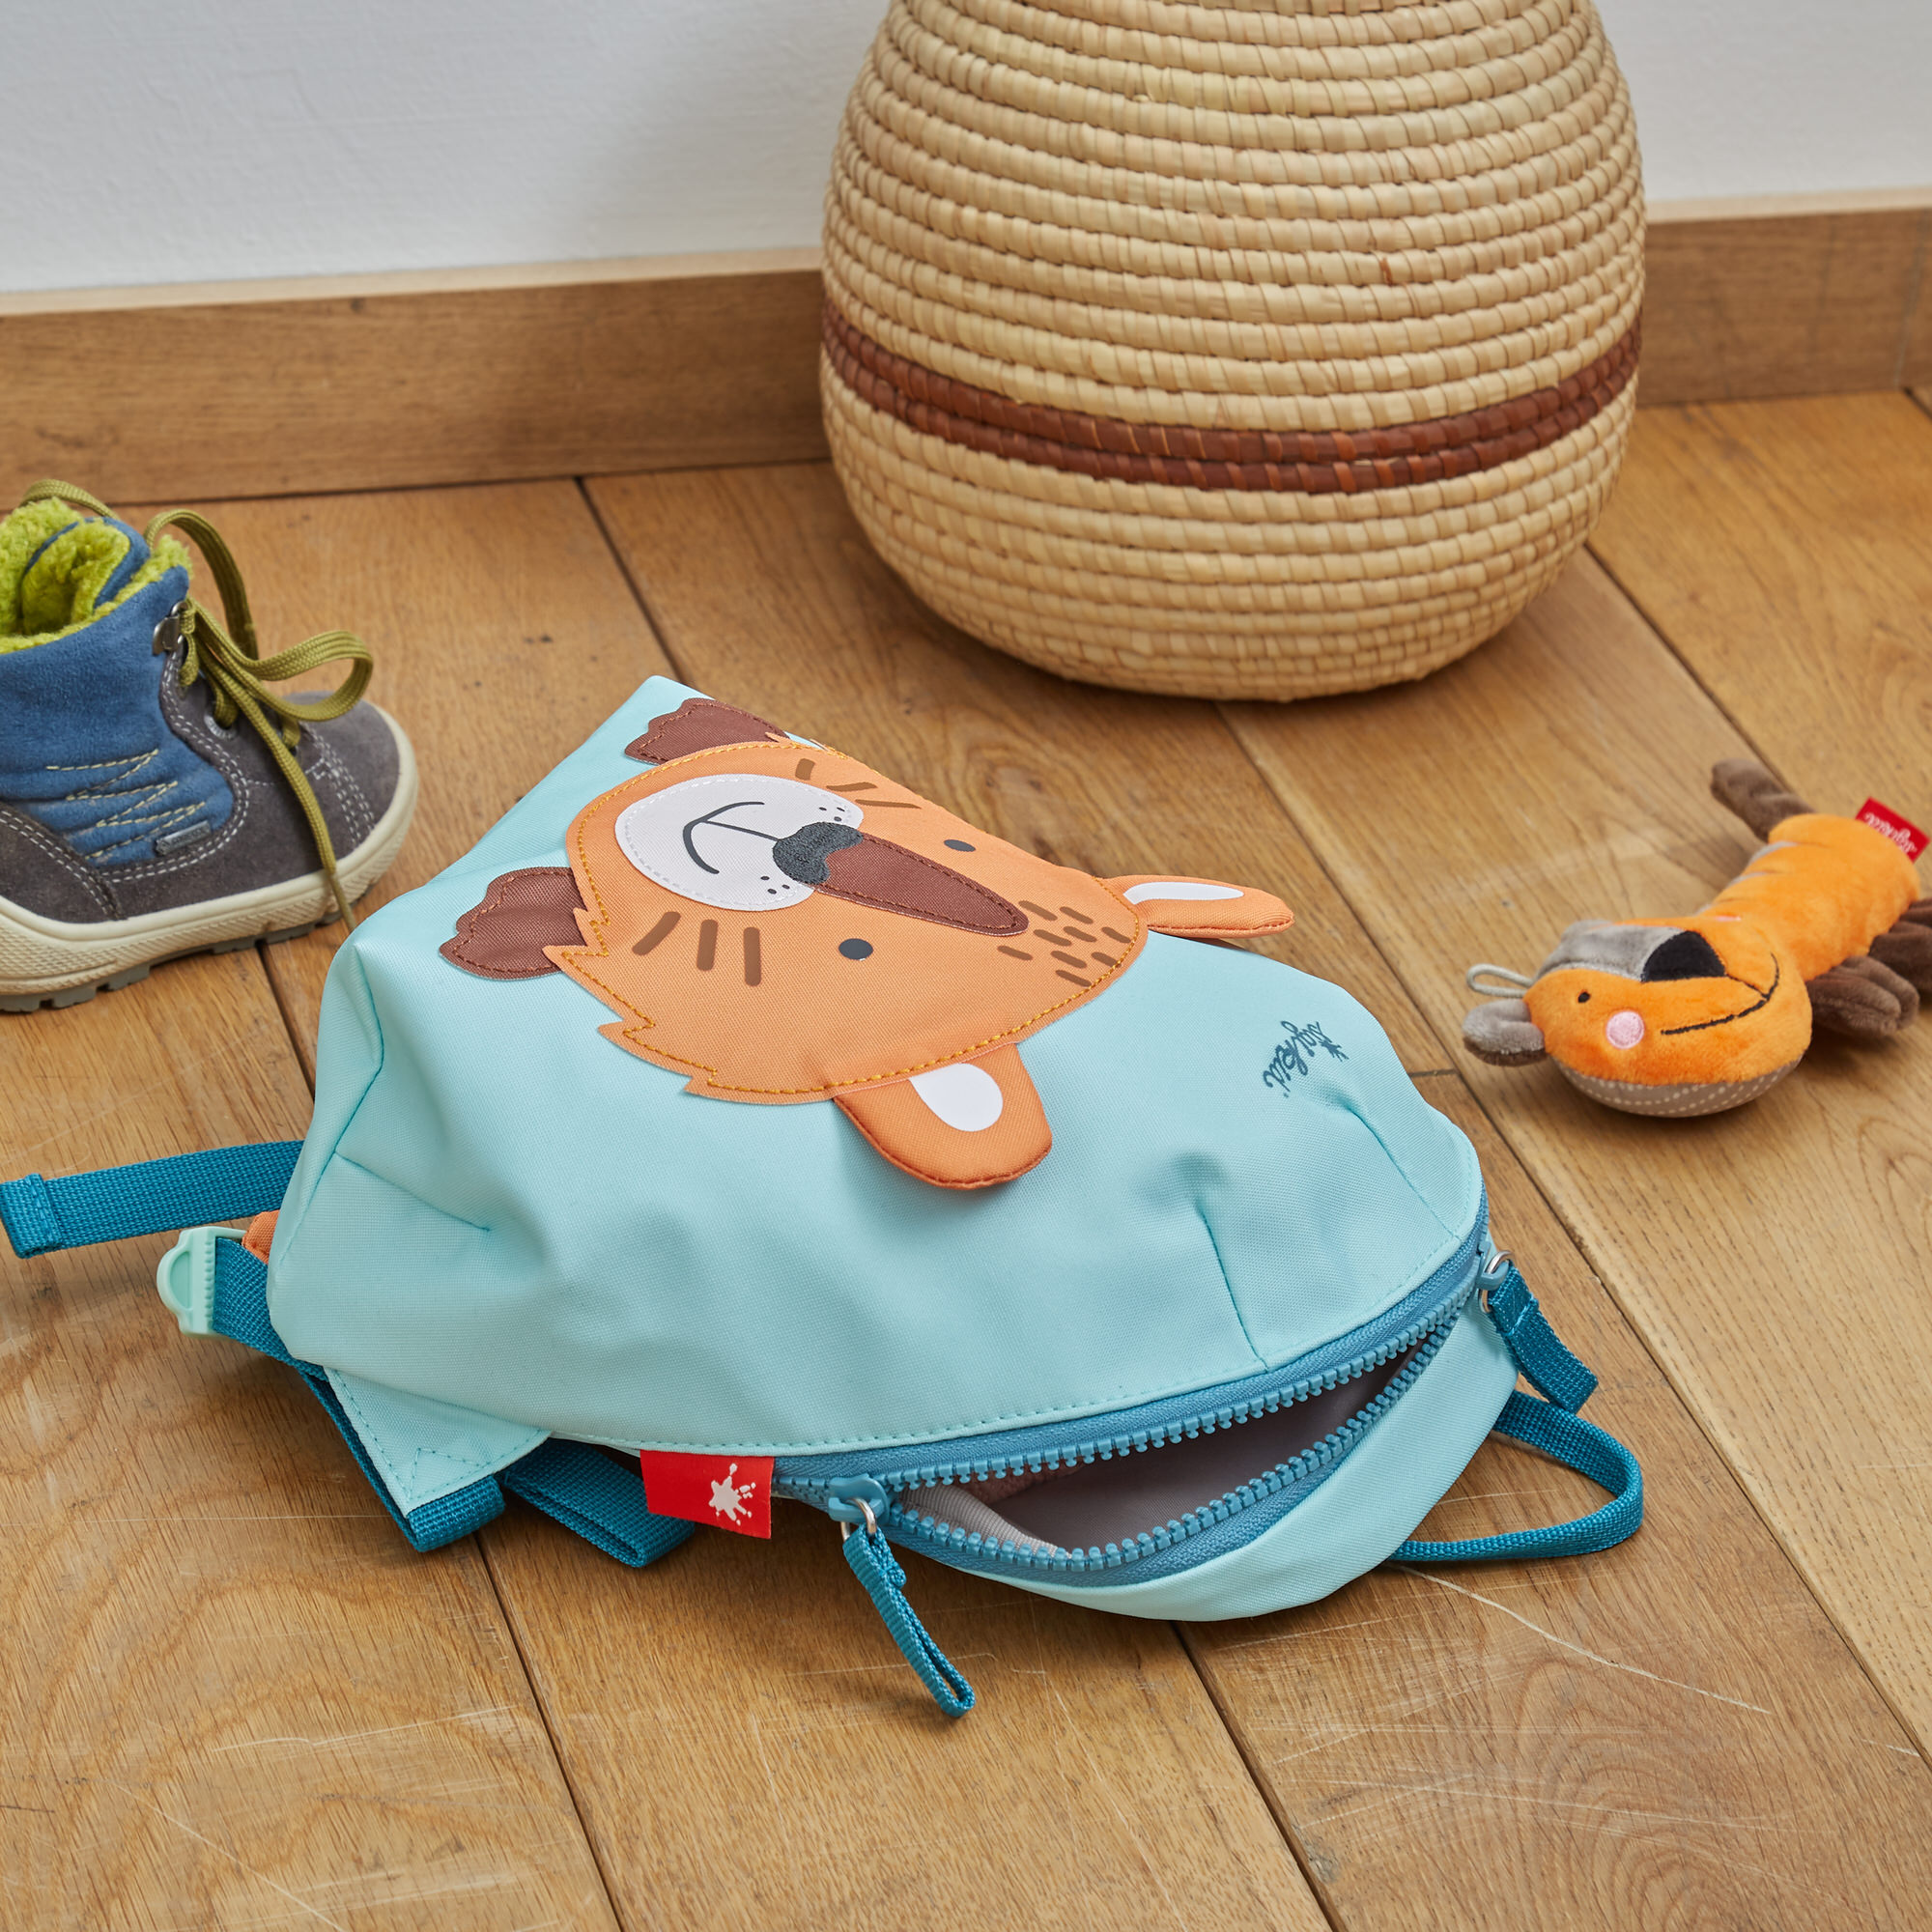 Mini backpack tiger for kindergarten kids